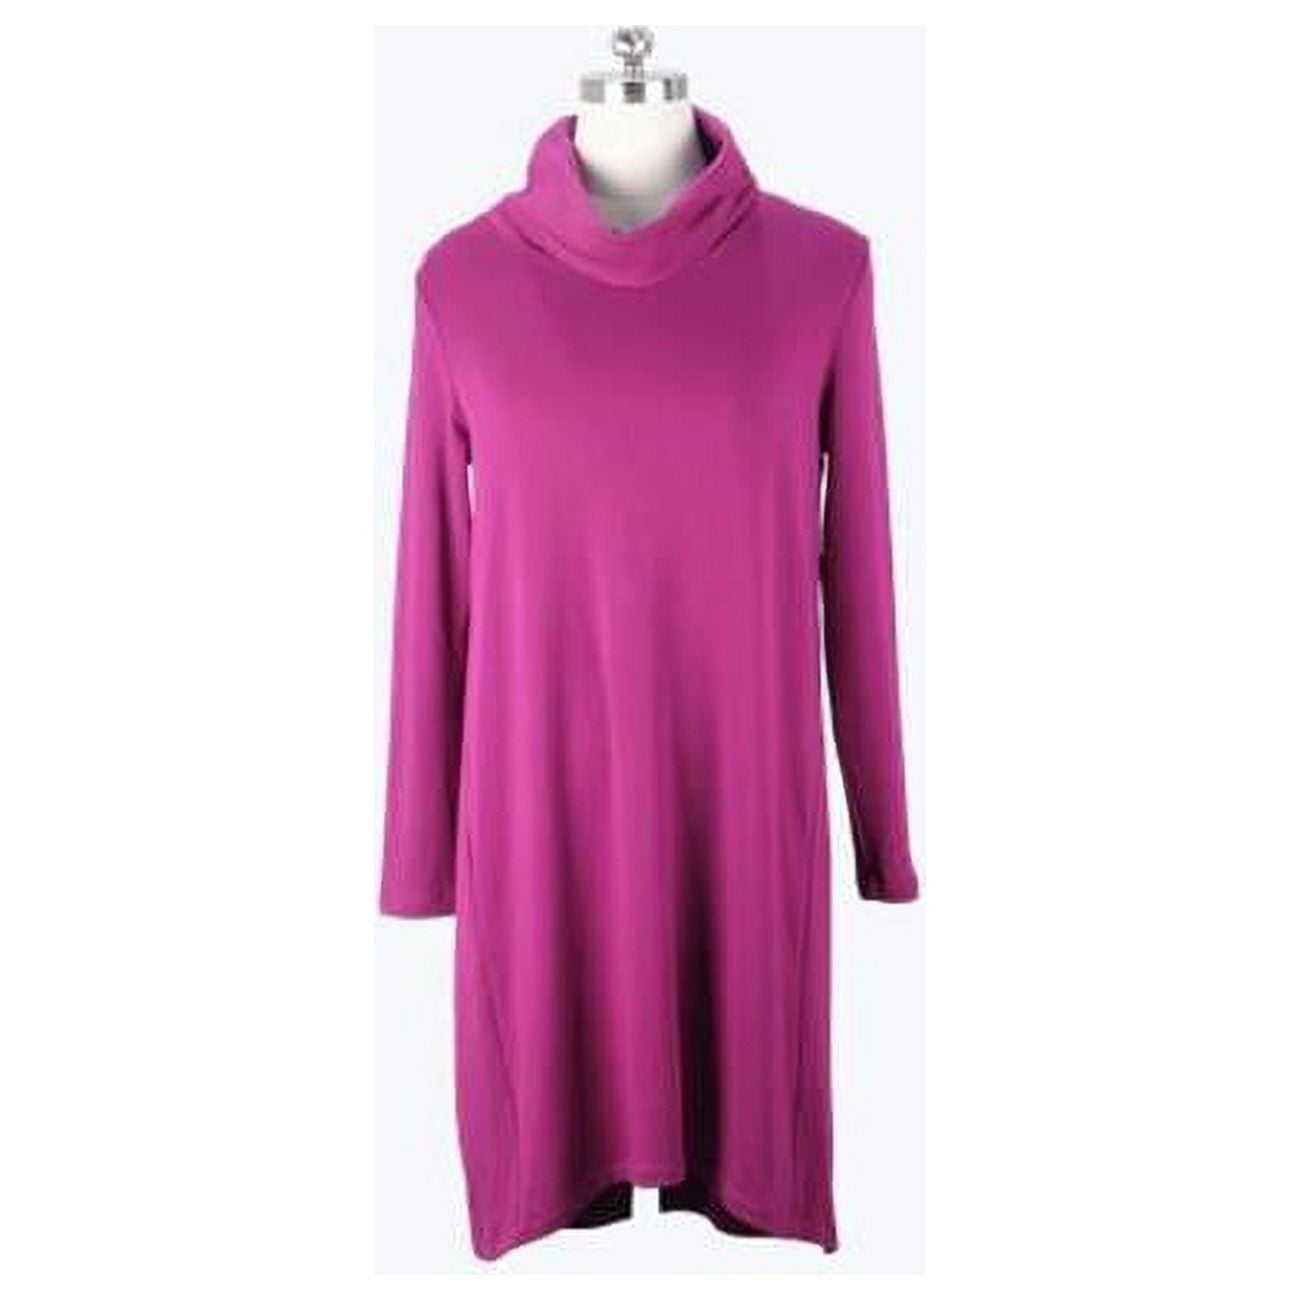 NWT Women's Wild Fable L/S Mineral Wash Sweatshirt Dress Sz Medium